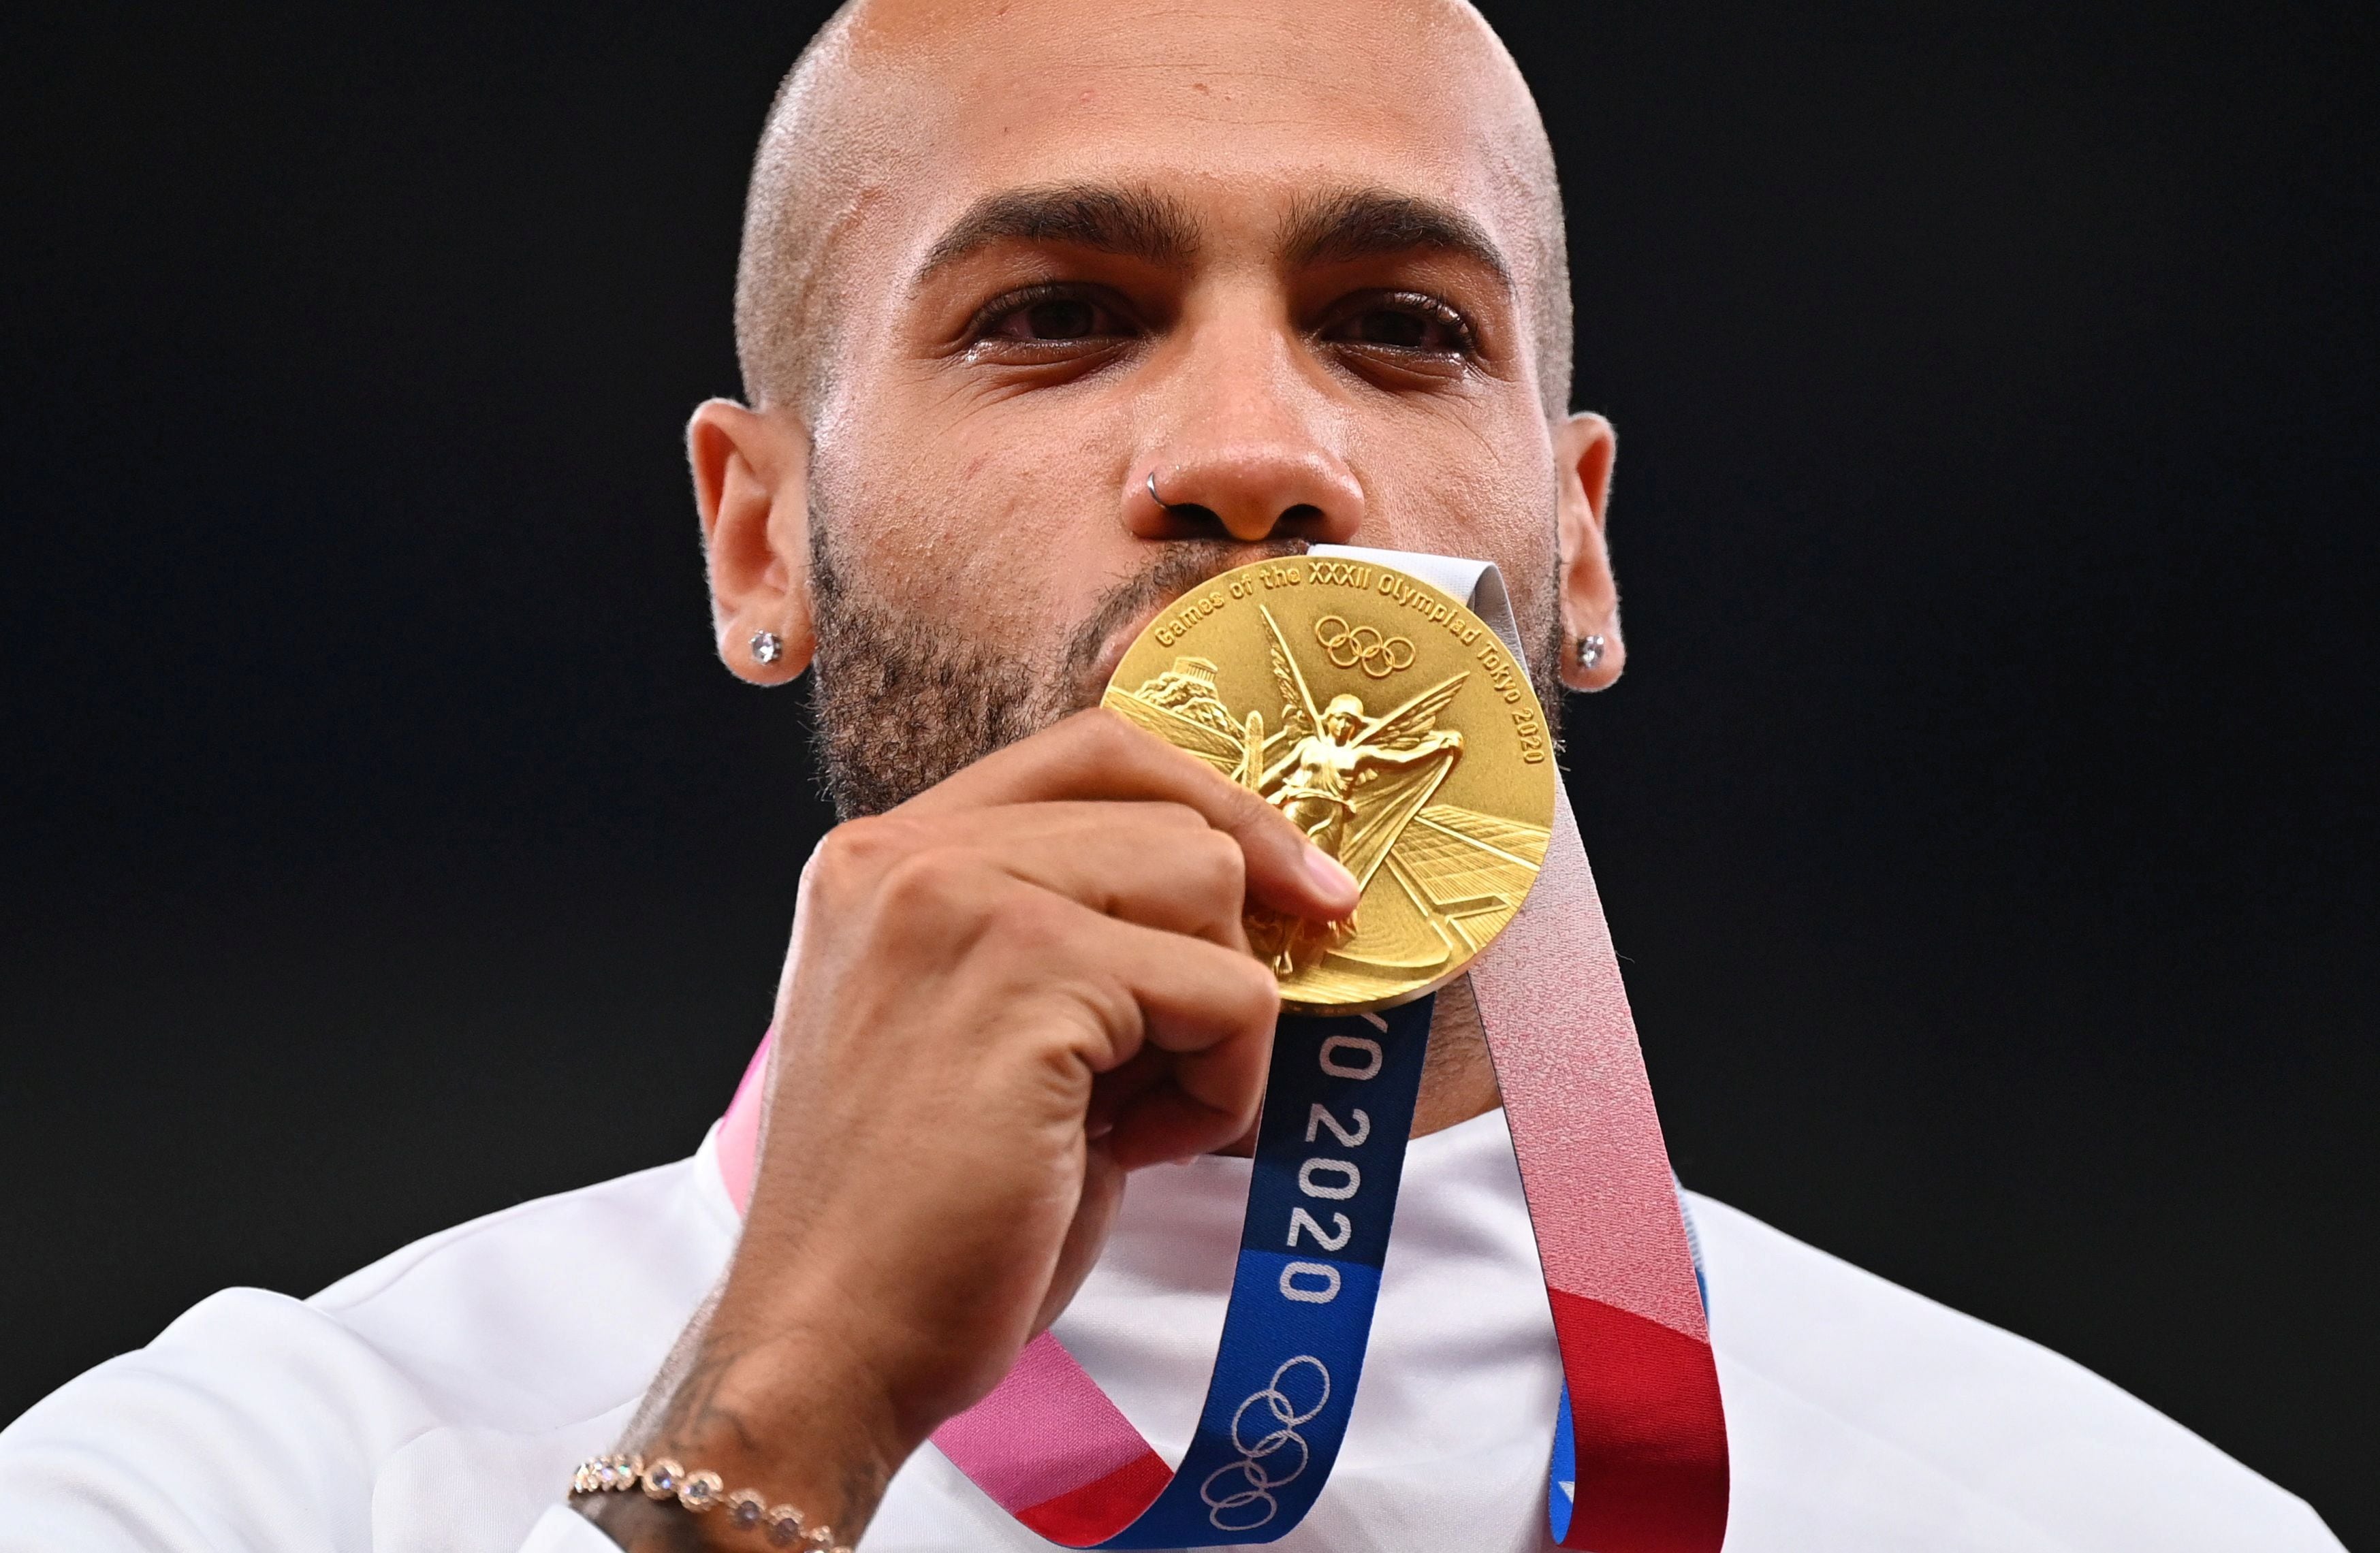 Marcell Jacobs, el italiano que sorprendió al mundo en Tokio 2020 y ganó la dorada en los 100 metros masculinos del atletismo